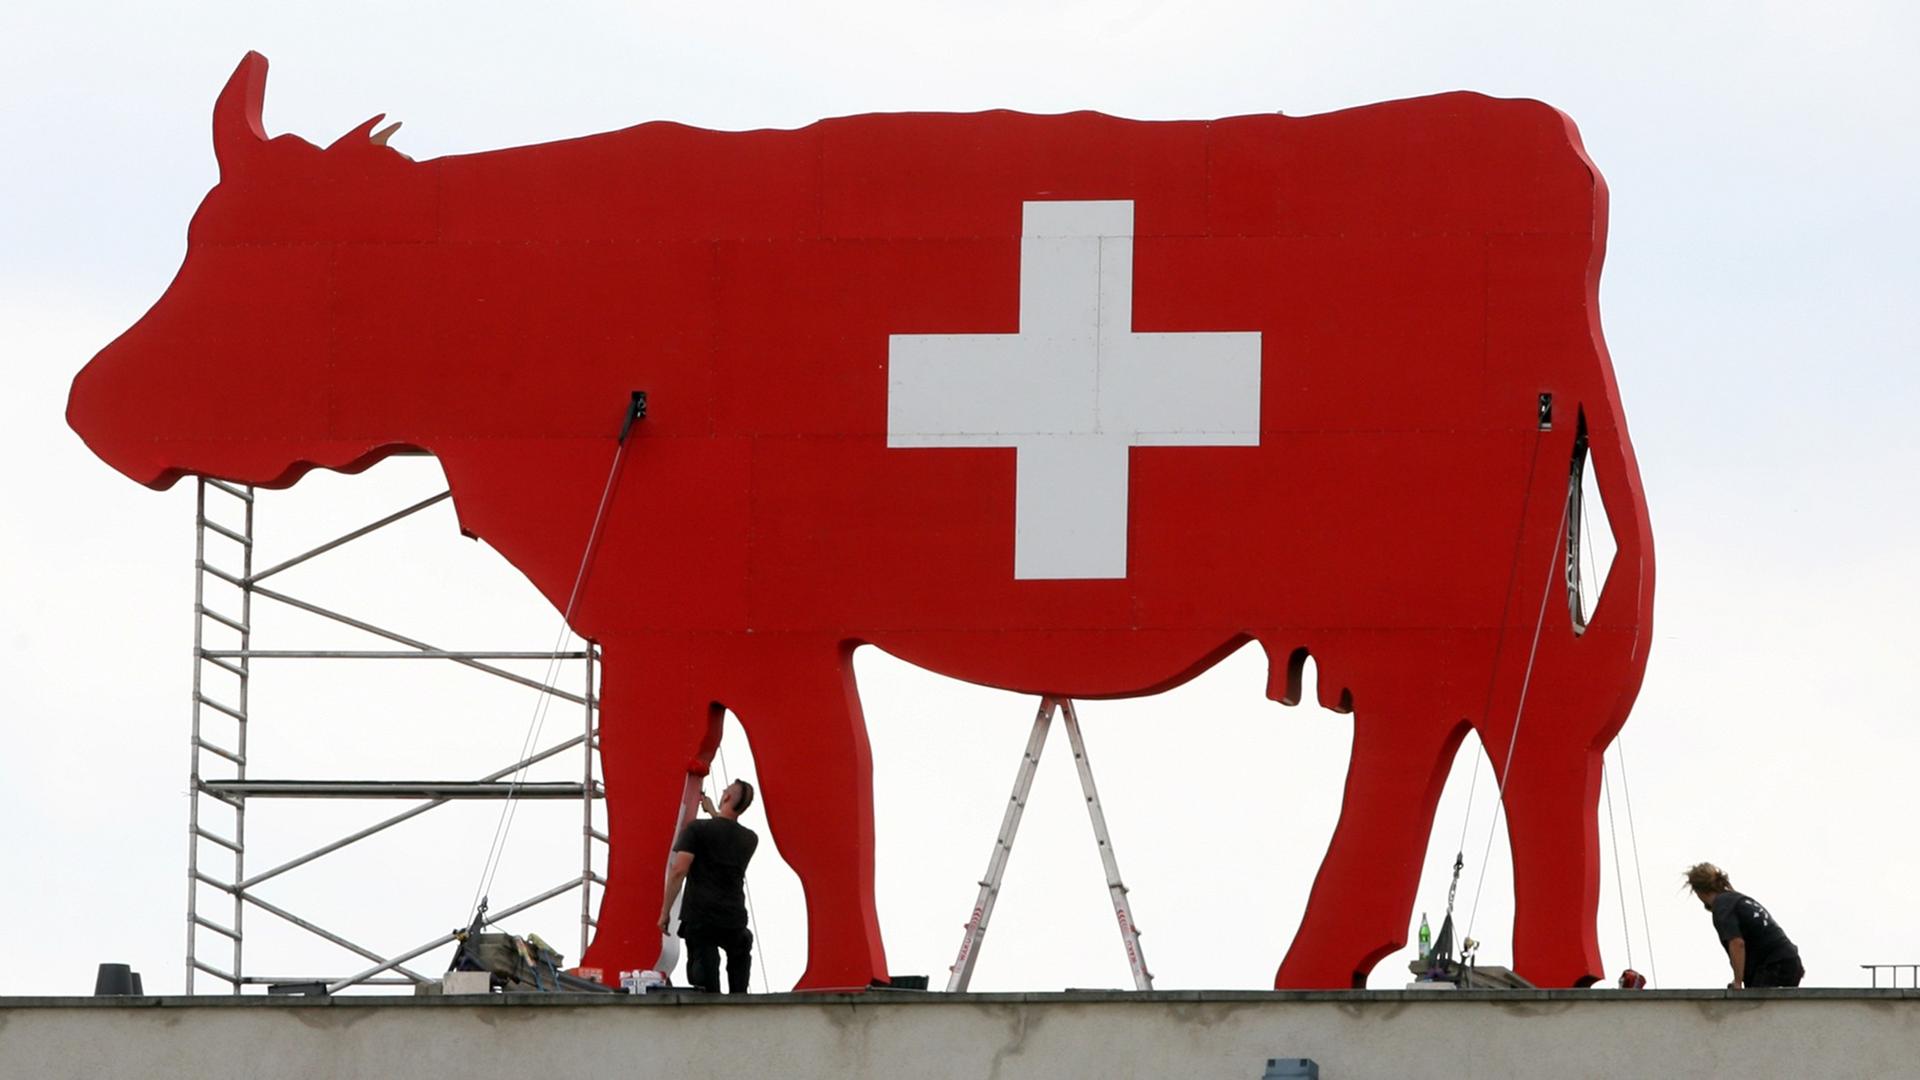 Eine überdimensionale rote Kuh steht am 30. Juli 2009 auf dem Dach der Schweizer Botschaft im Berliner Stadtteil Mitte. Zum 718. Geburtstag der Schweizerischen Eidgenossenschaft bietet die hauptstädtische Dependance zahlreiche Veranstaltungen und Attraktionen an. Das Programm des Nationalfeiertages beinhaltet das Kulturfestival "Schweizgenössisch".